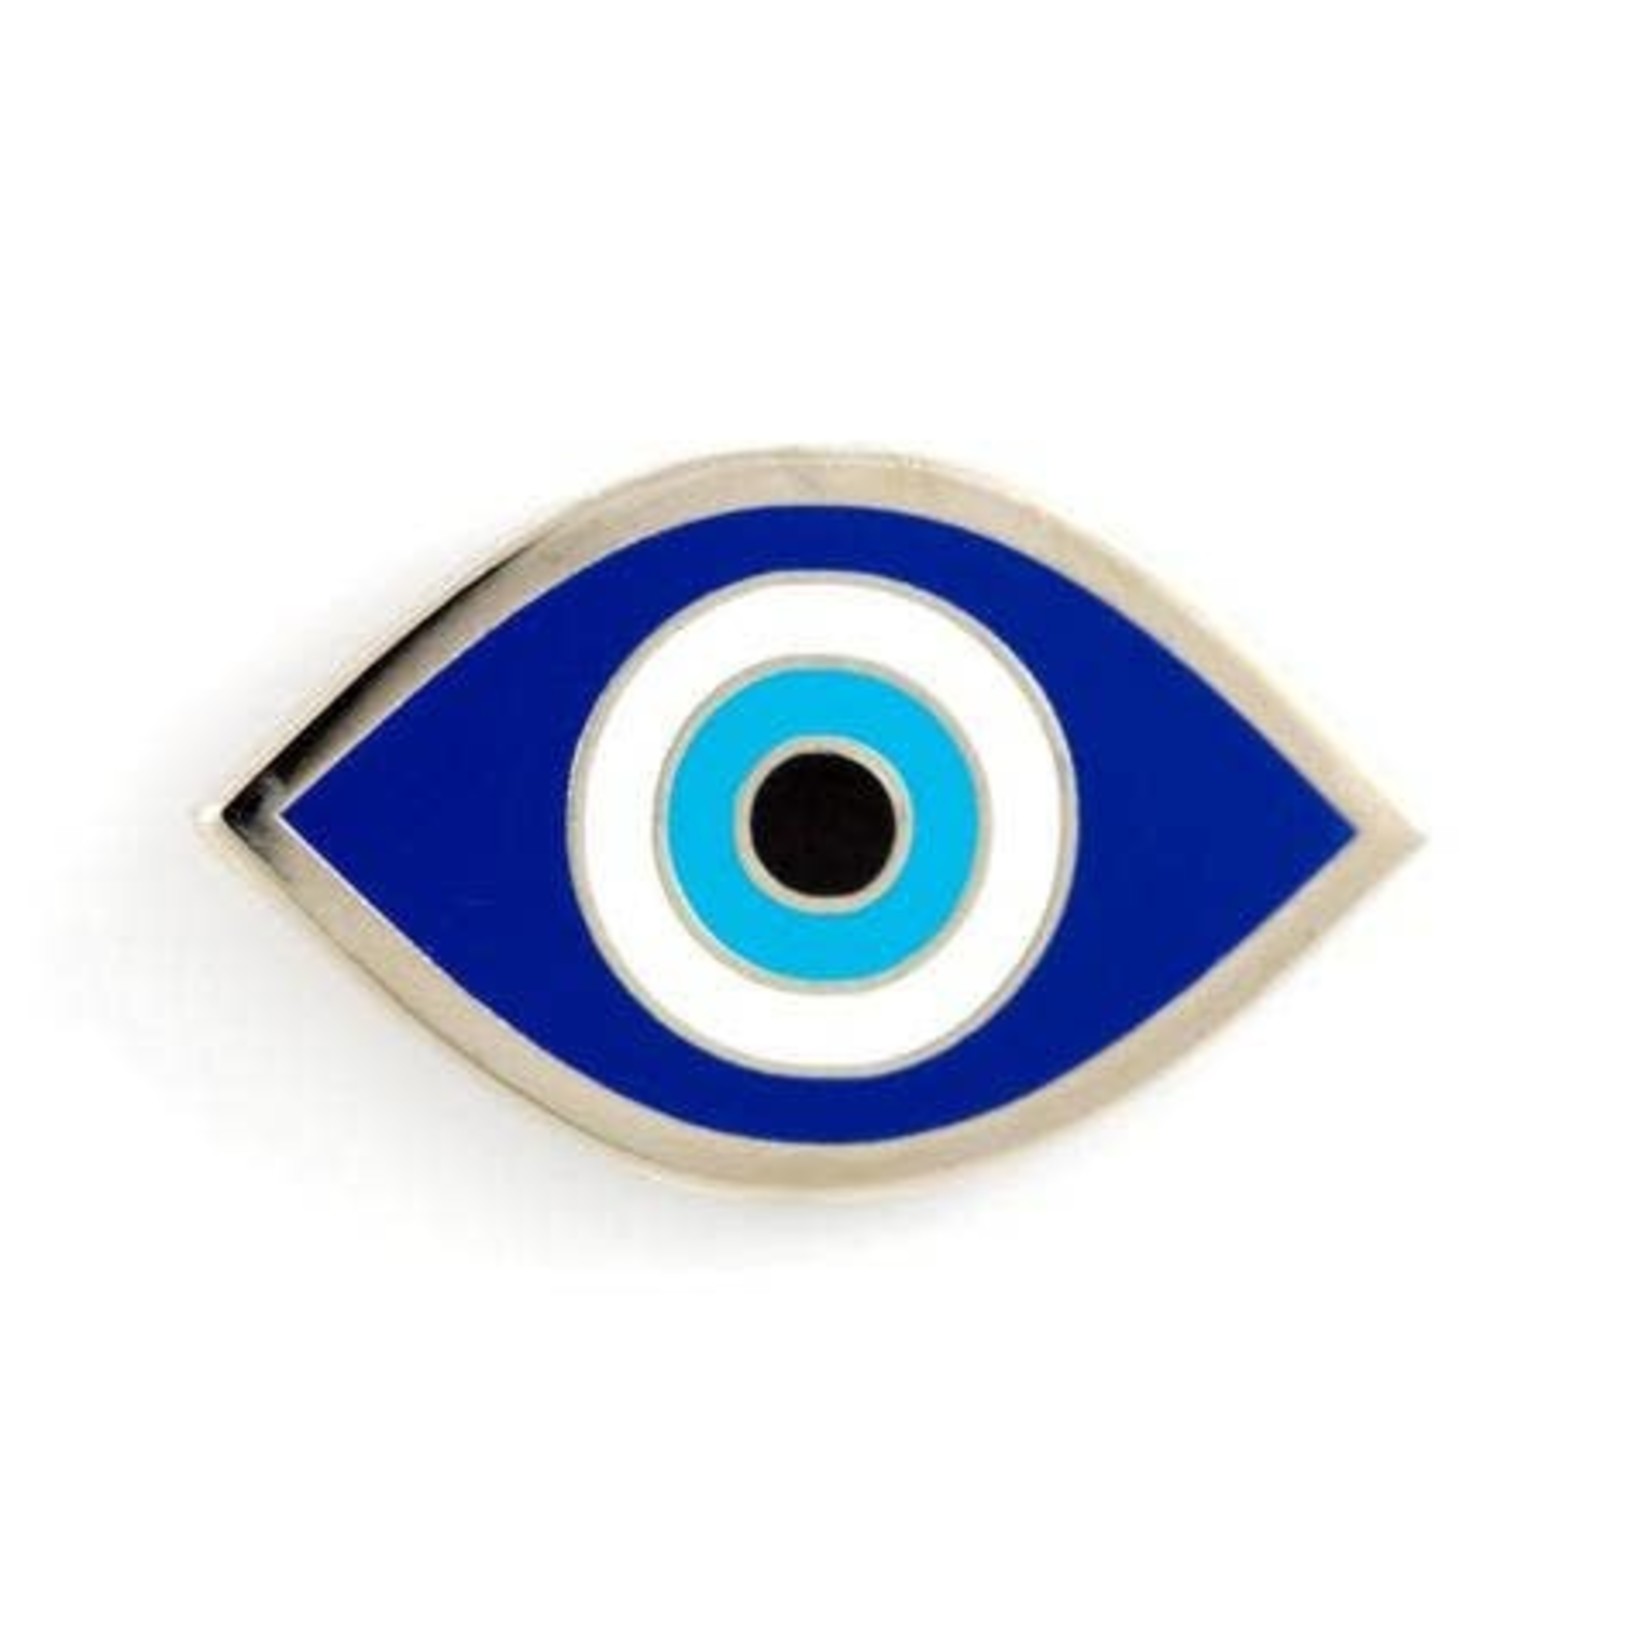 Pin - Evil Eye